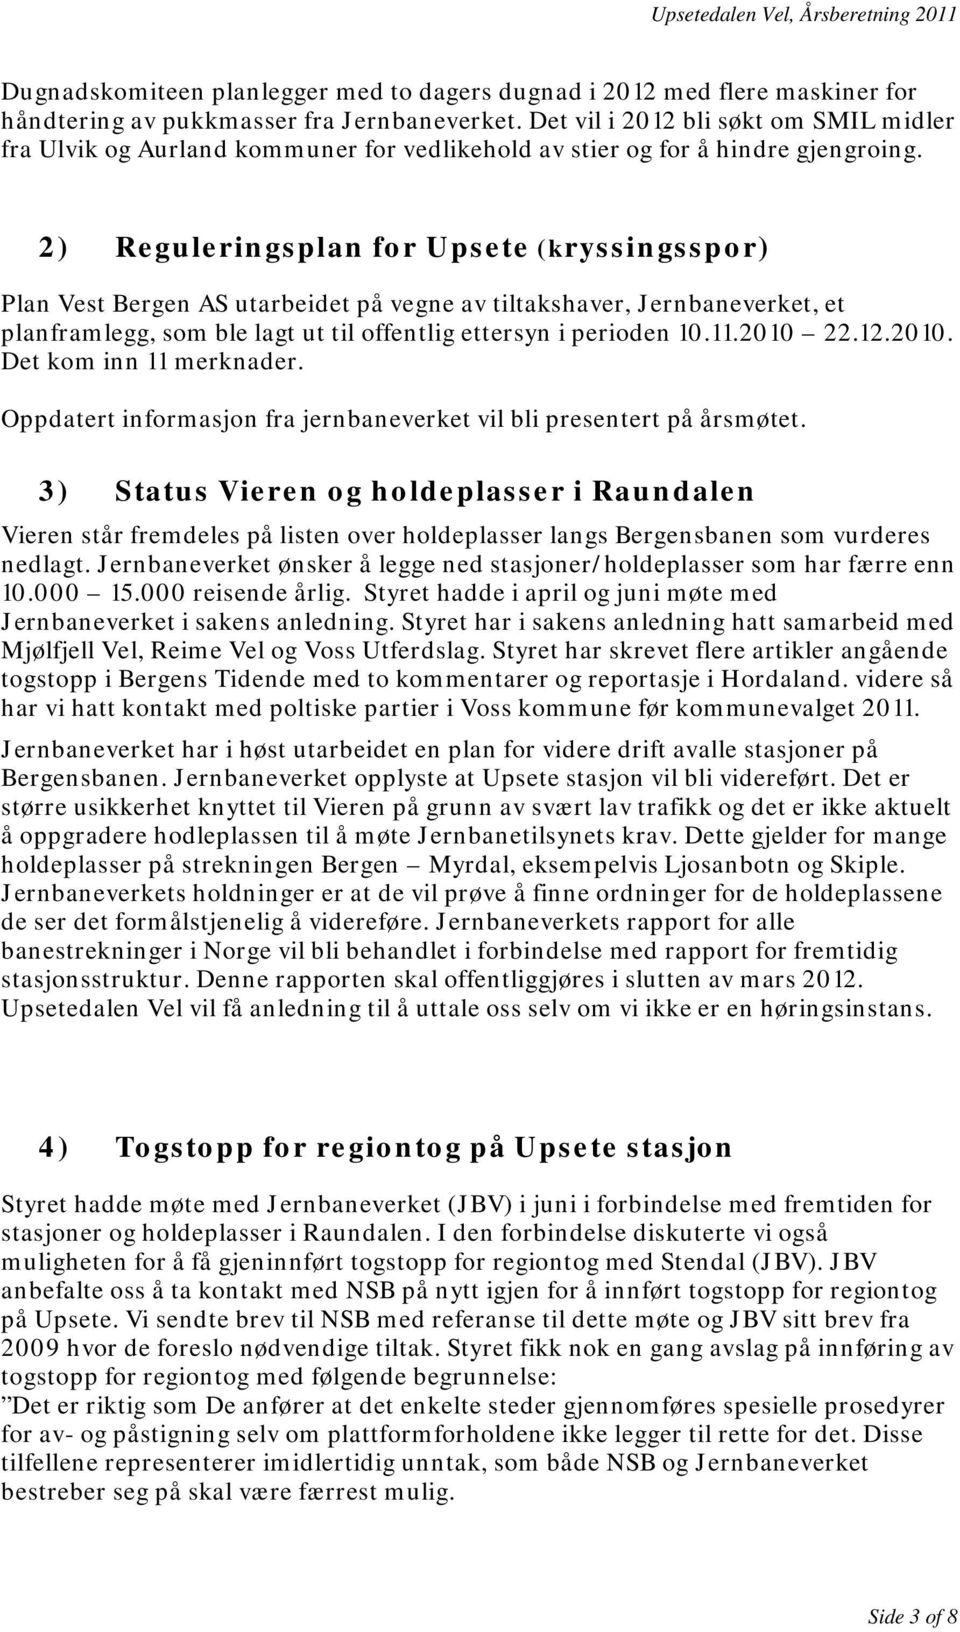 2) Reguleringsplan for Upsete (kryssingsspor) Plan Vest Bergen AS utarbeidet på vegne av tiltakshaver, Jernbaneverket, et planframlegg, som ble lagt ut til offentlig ettersyn i perioden 10.11.2010 22.